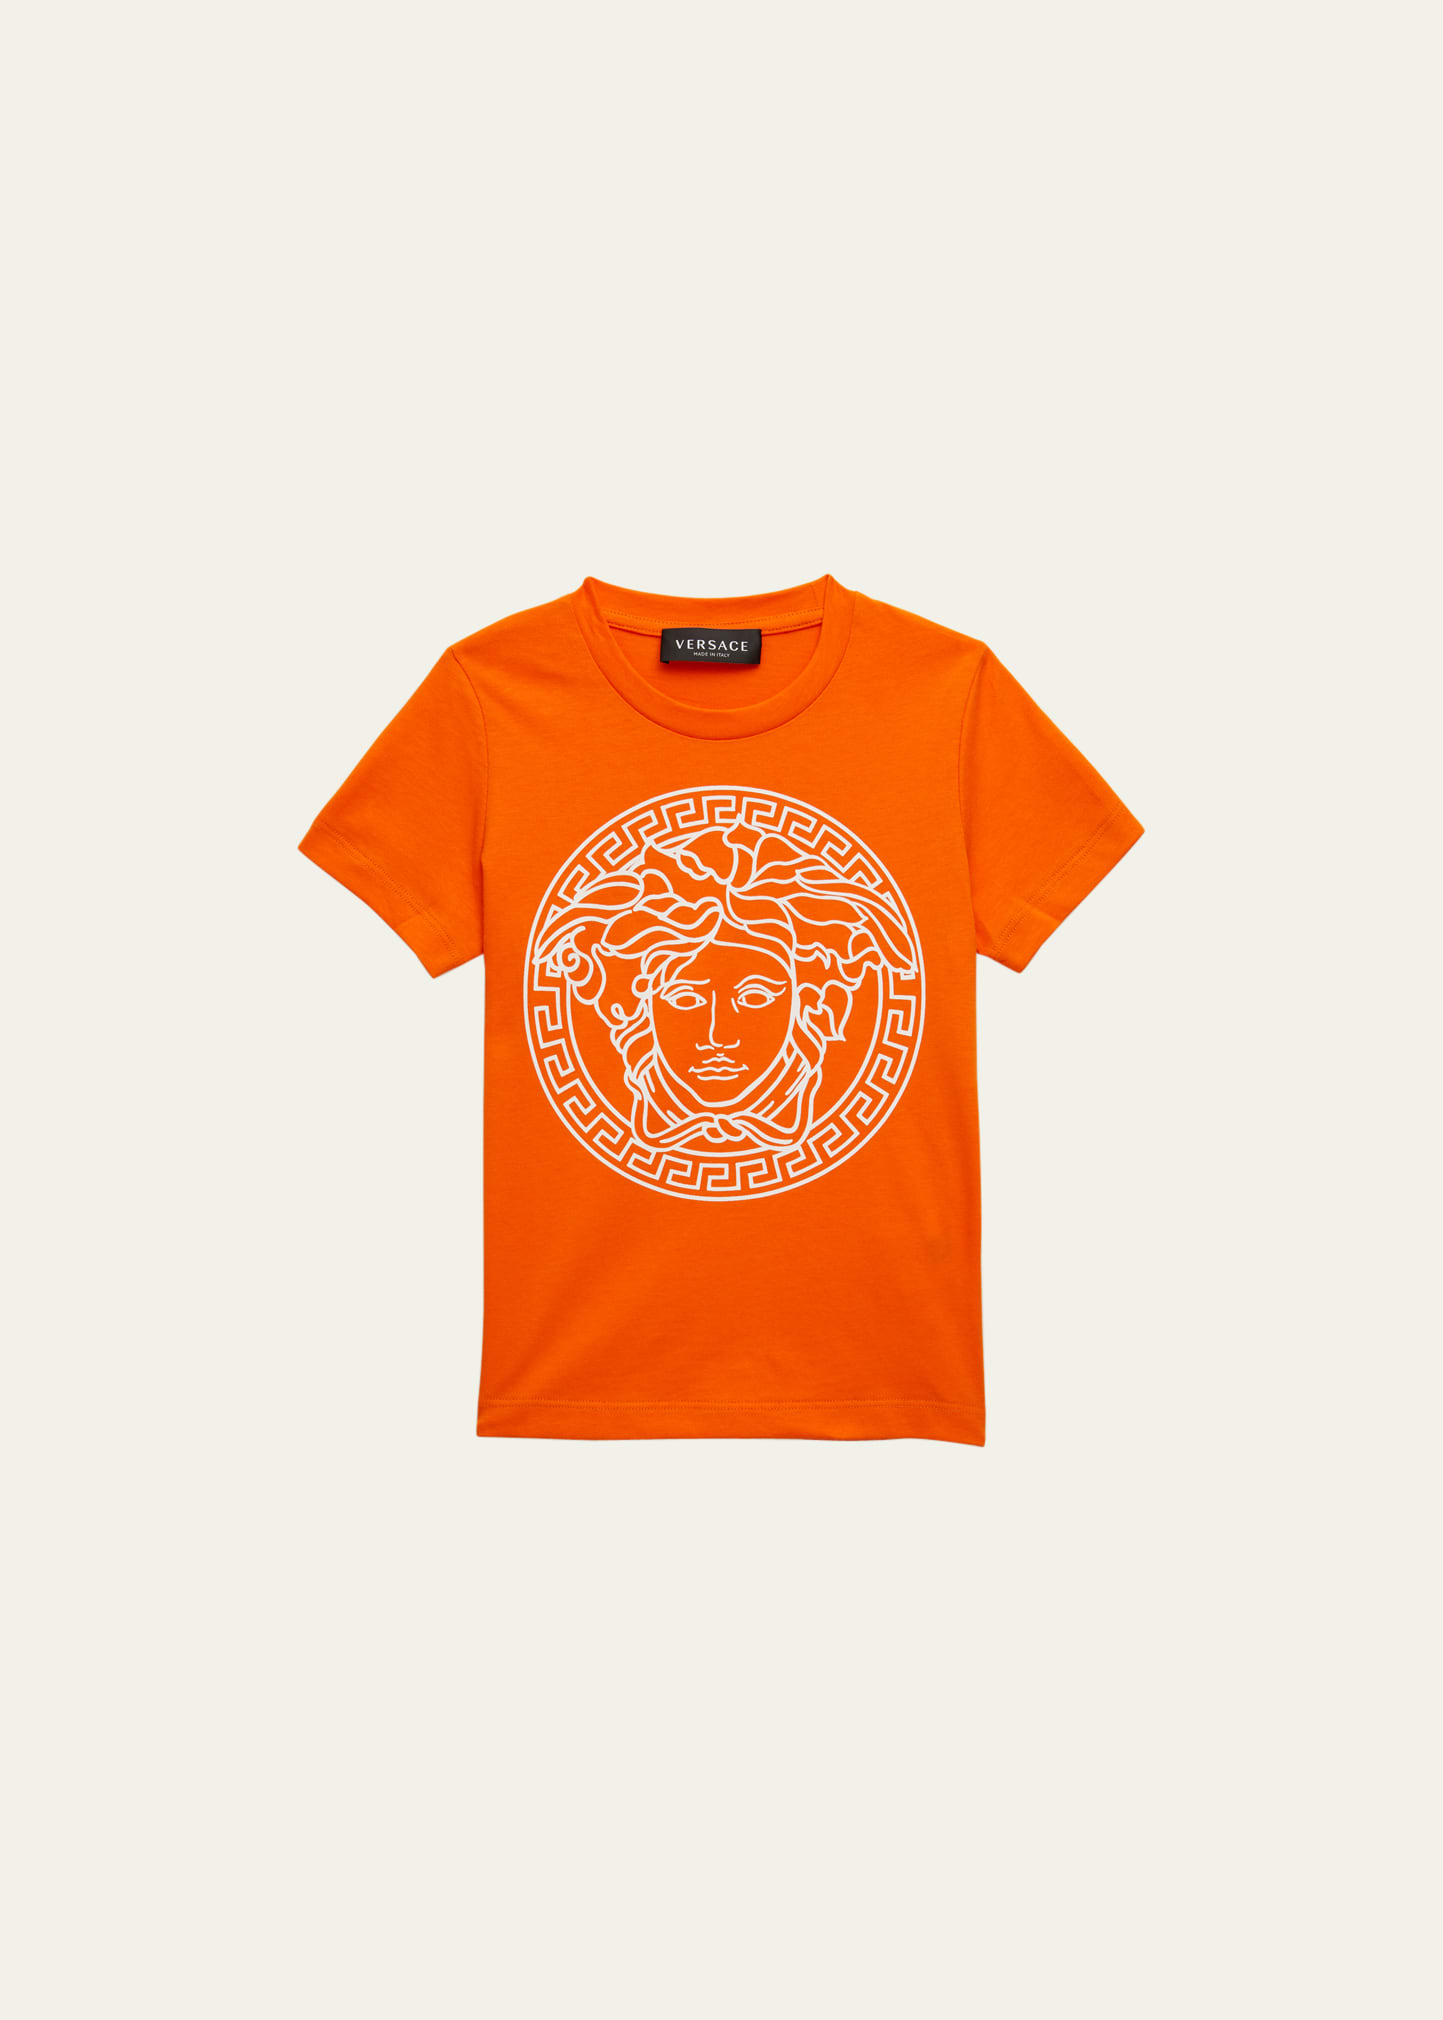 Versace Kid's Medusa Head Crest T-shirt In Orangewhite